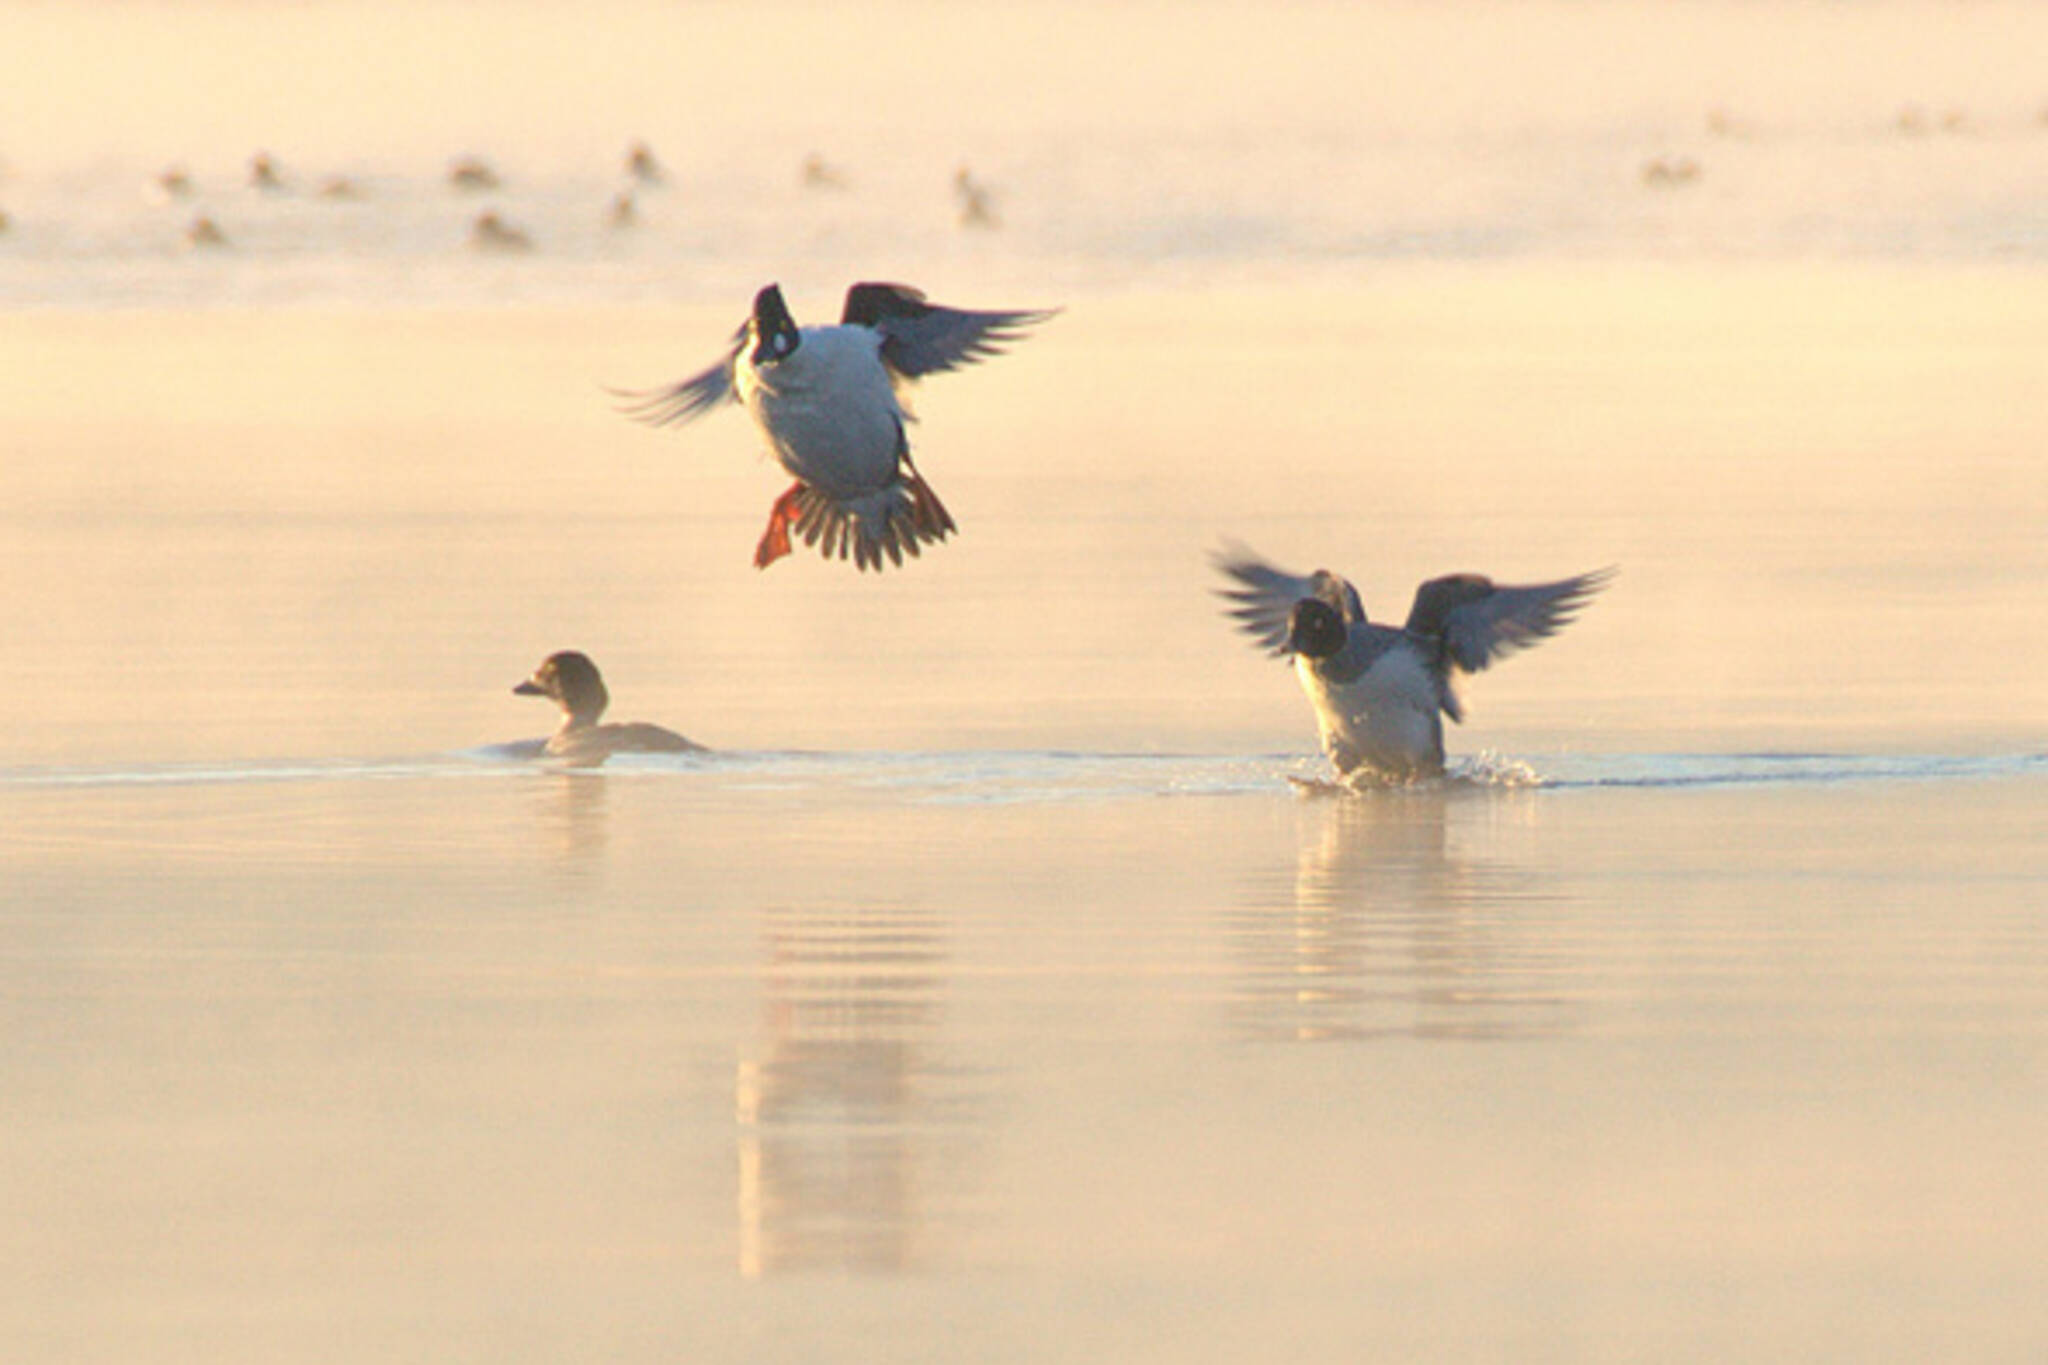 ducks landing